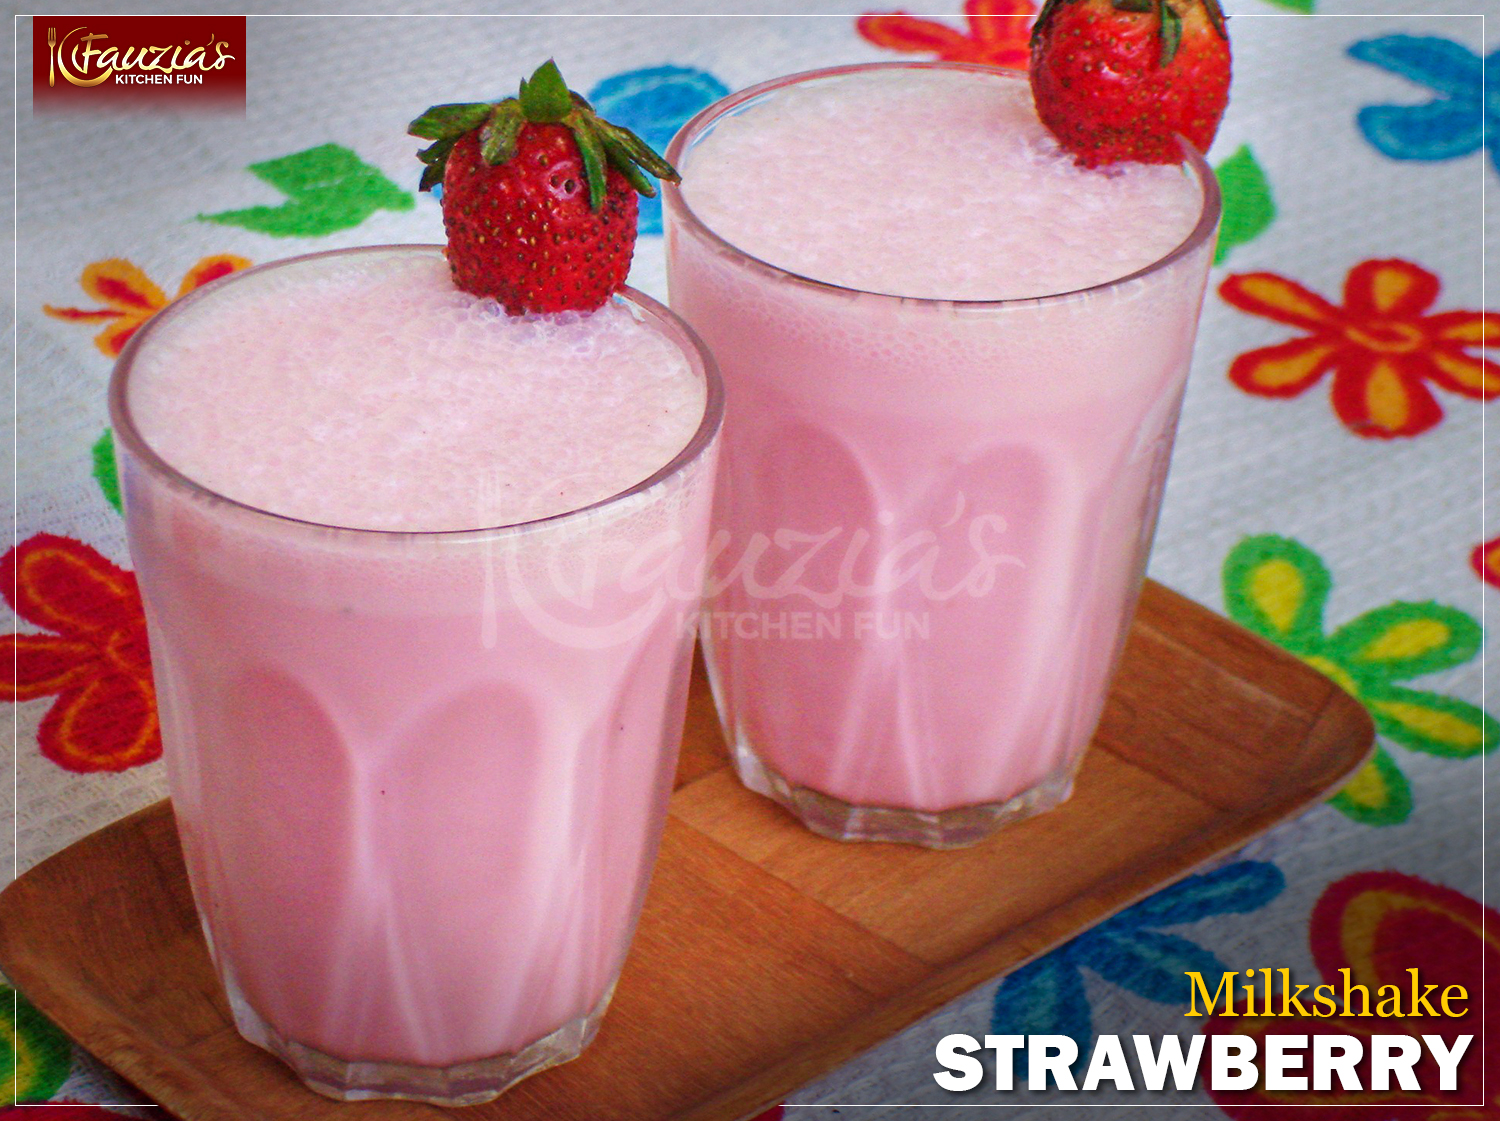 https://fauziaskitchenfun.com/wp-content/uploads/2012/04/Strawberry-Milkshake.jpg